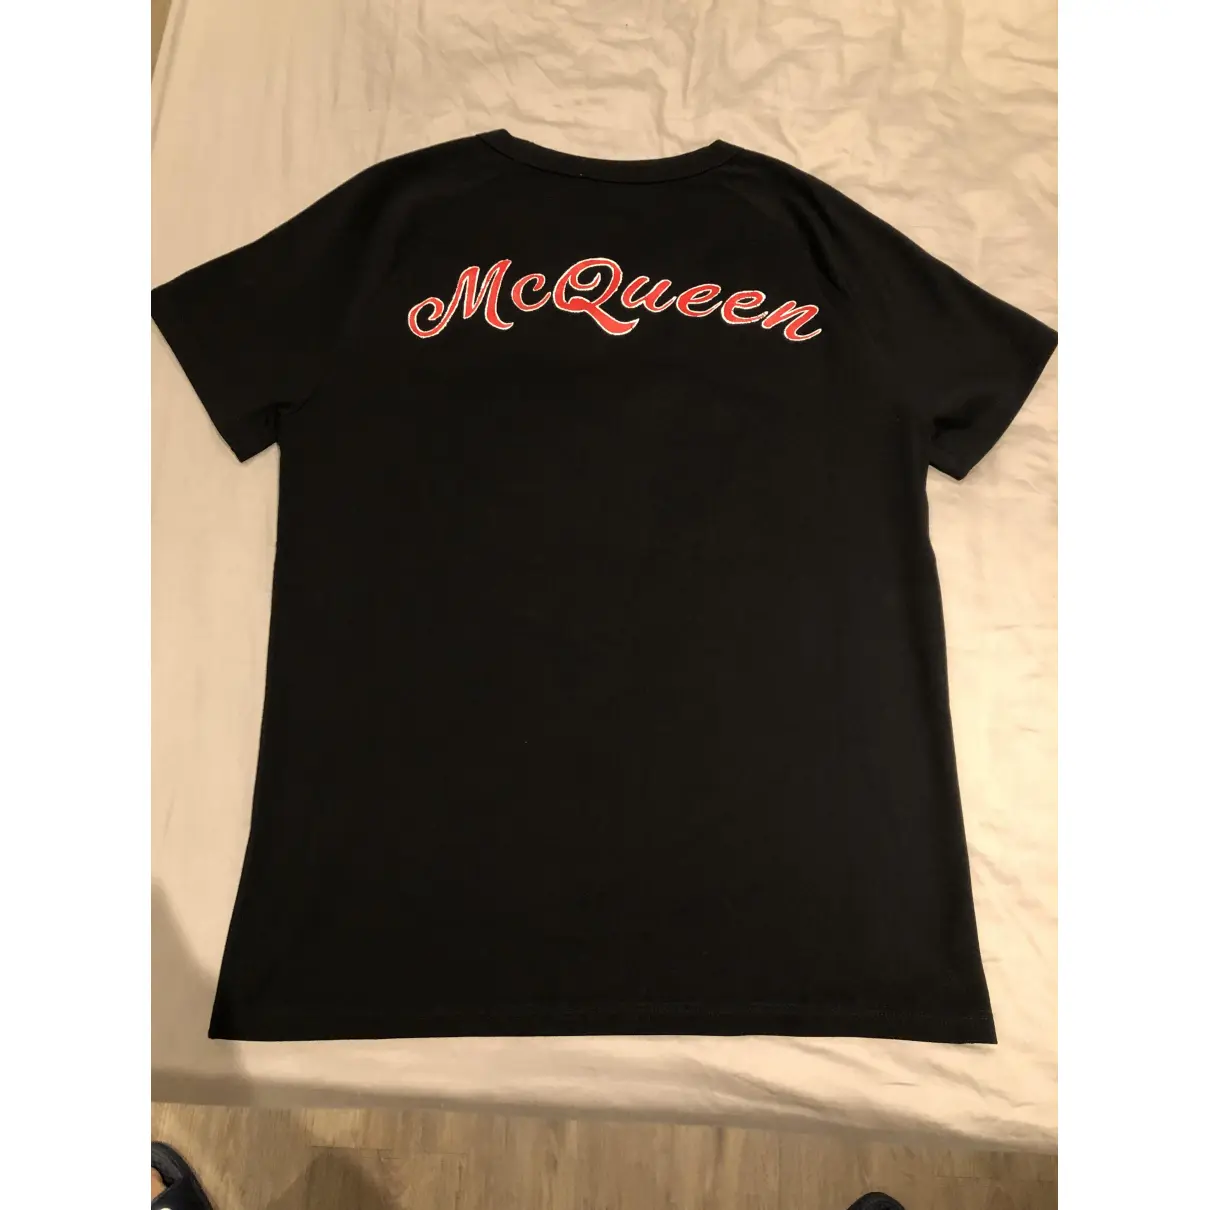 Buy Alexander McQueen Black Cotton T-shirt online